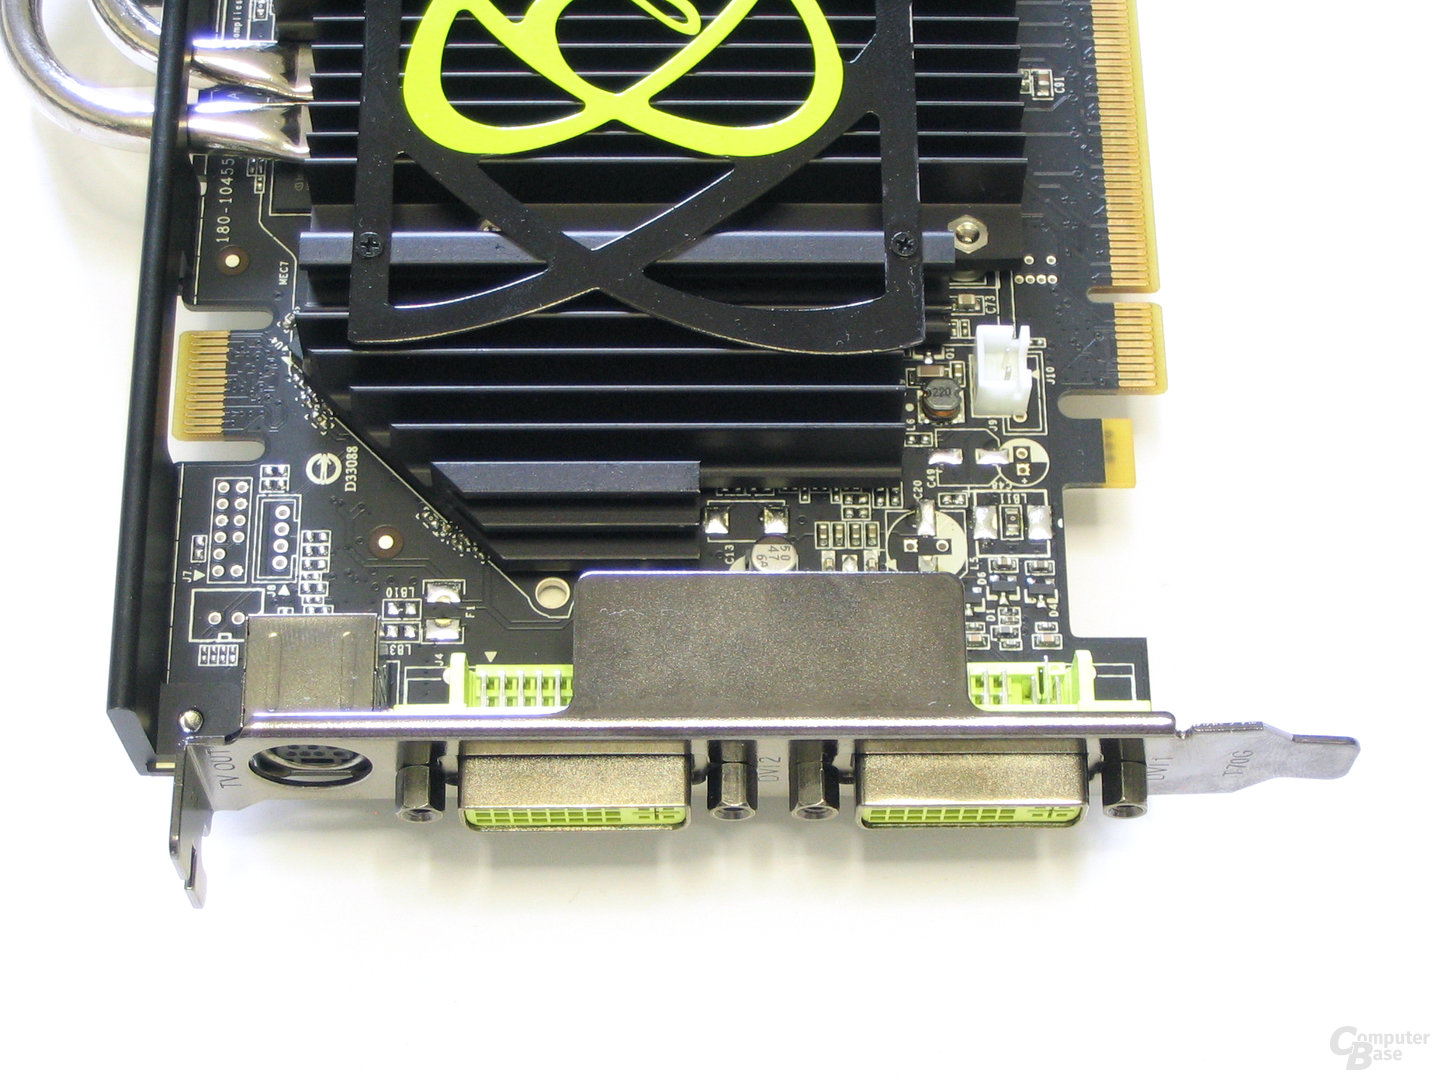 XFX GeForce 7950 GT Front